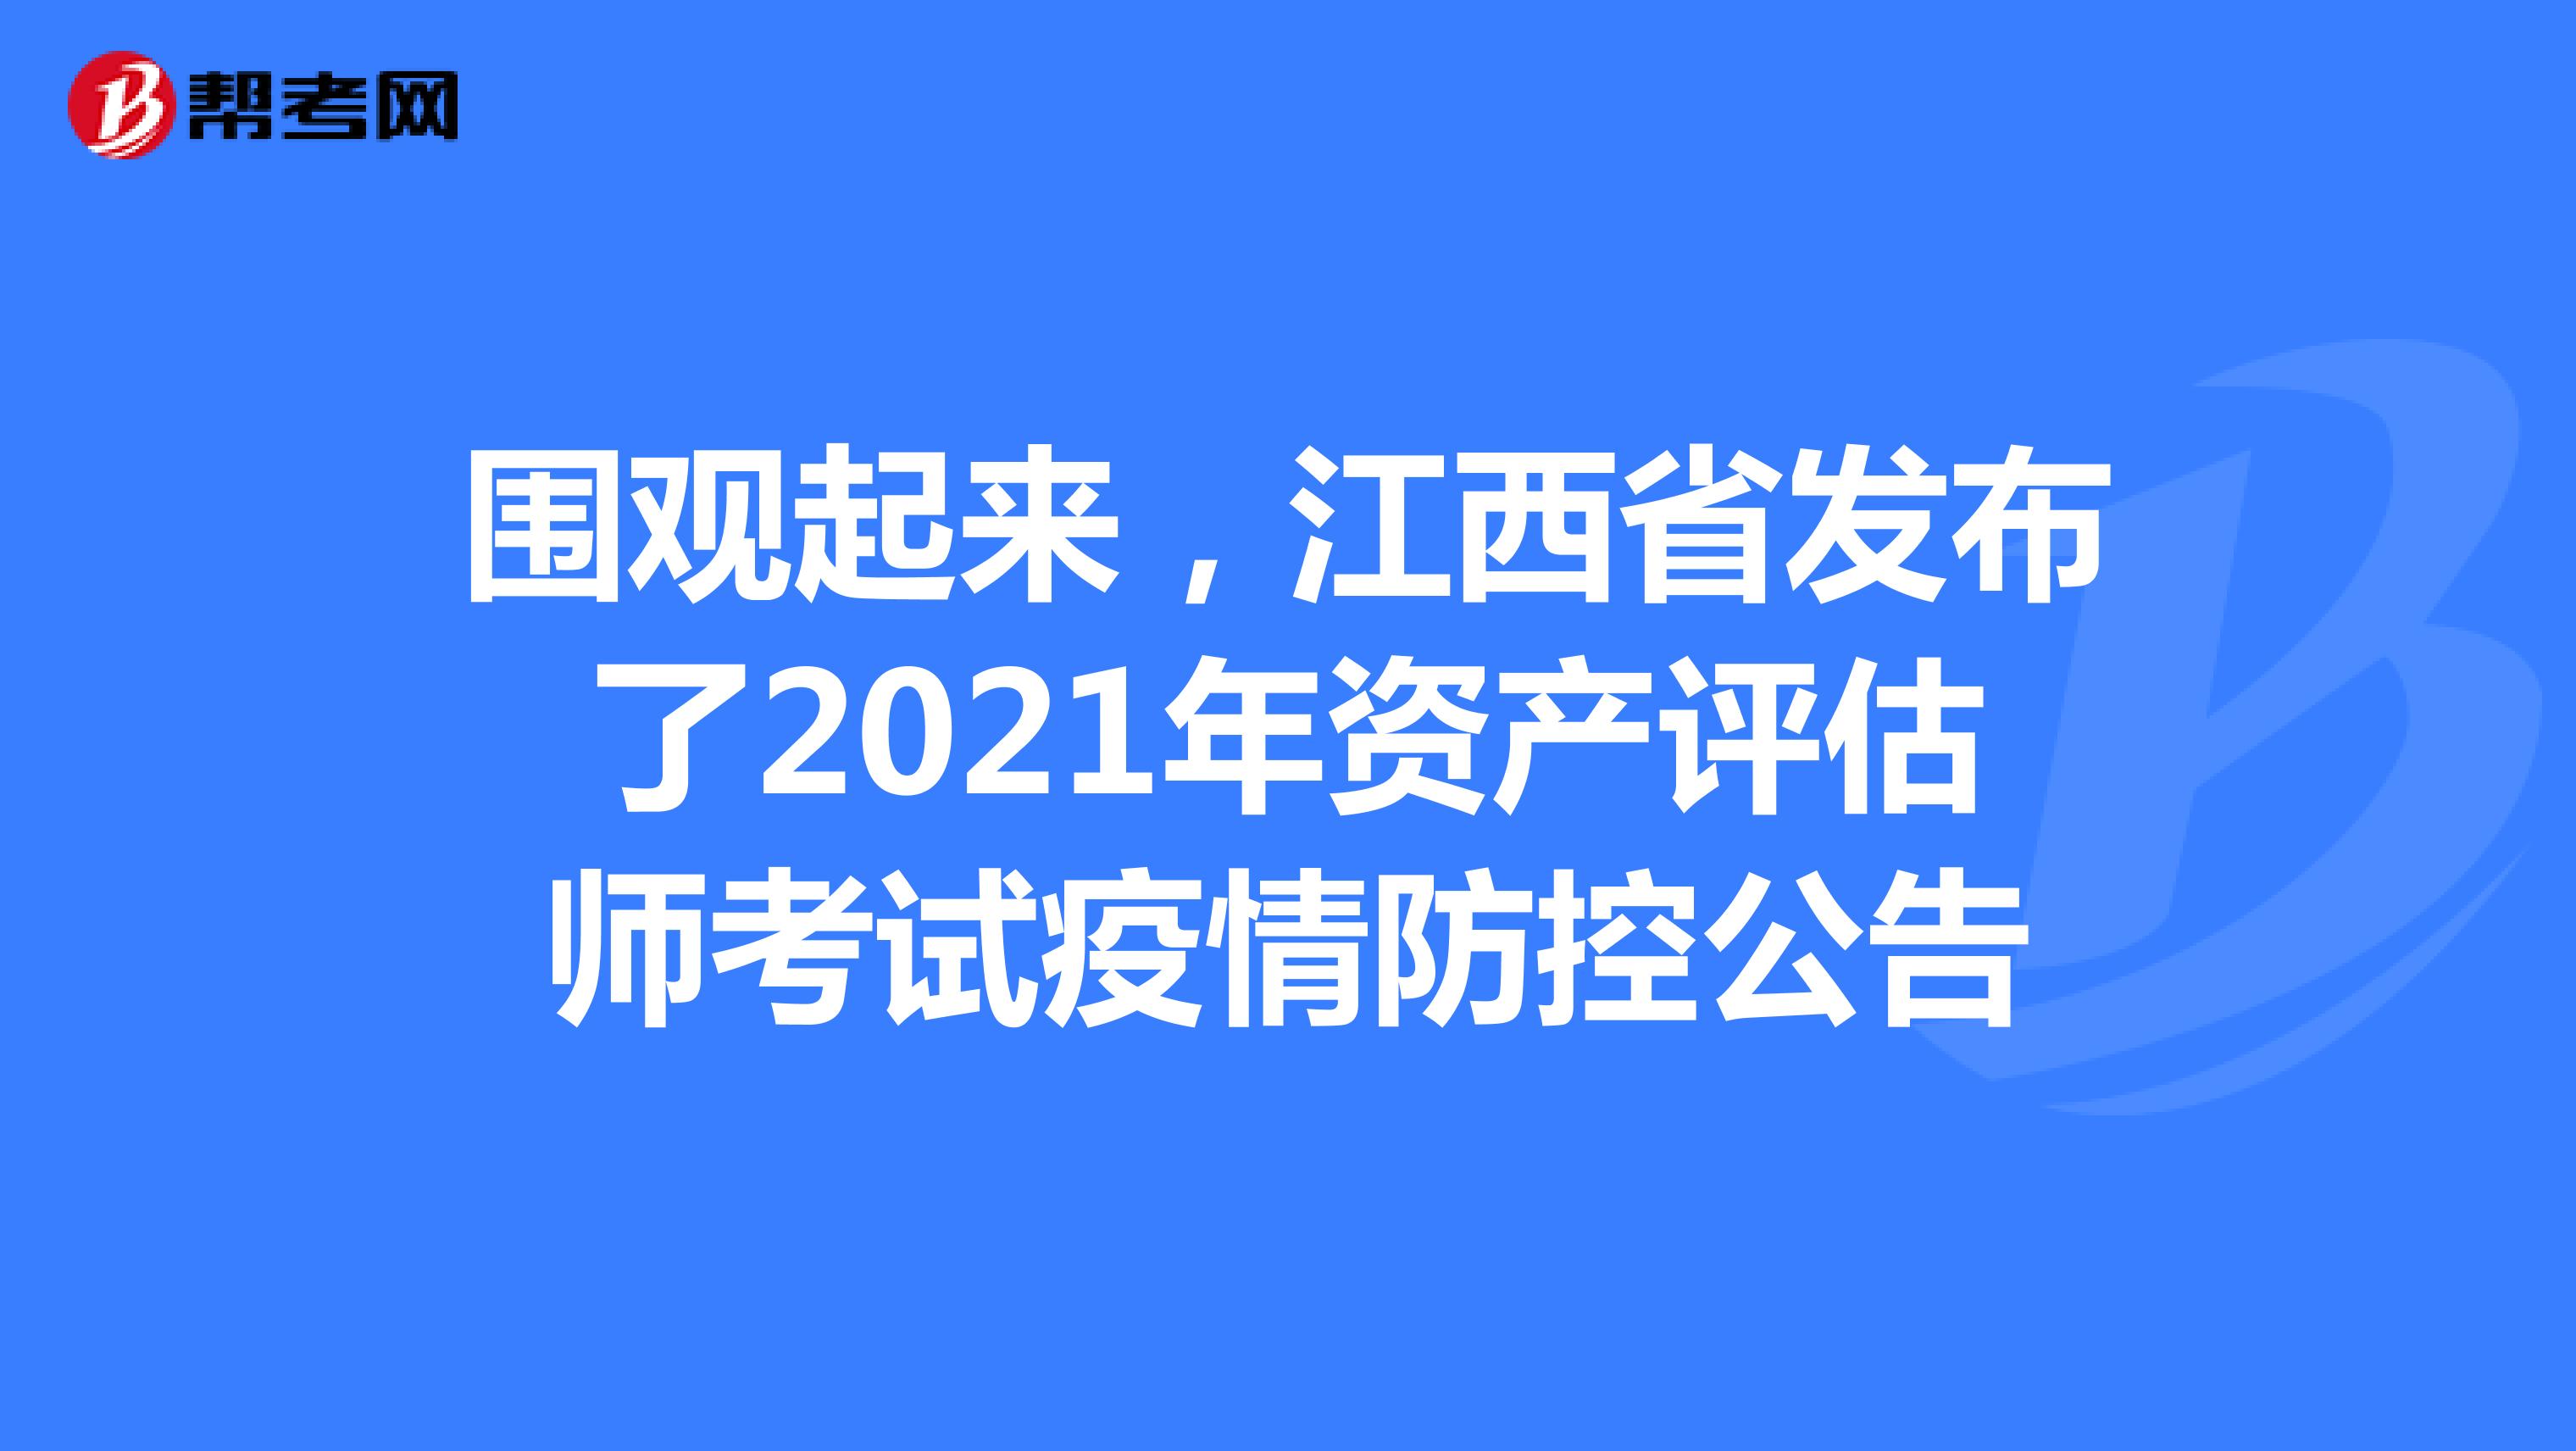 围观起来，江西省发布了2021年资产评估师考试疫情防控公告